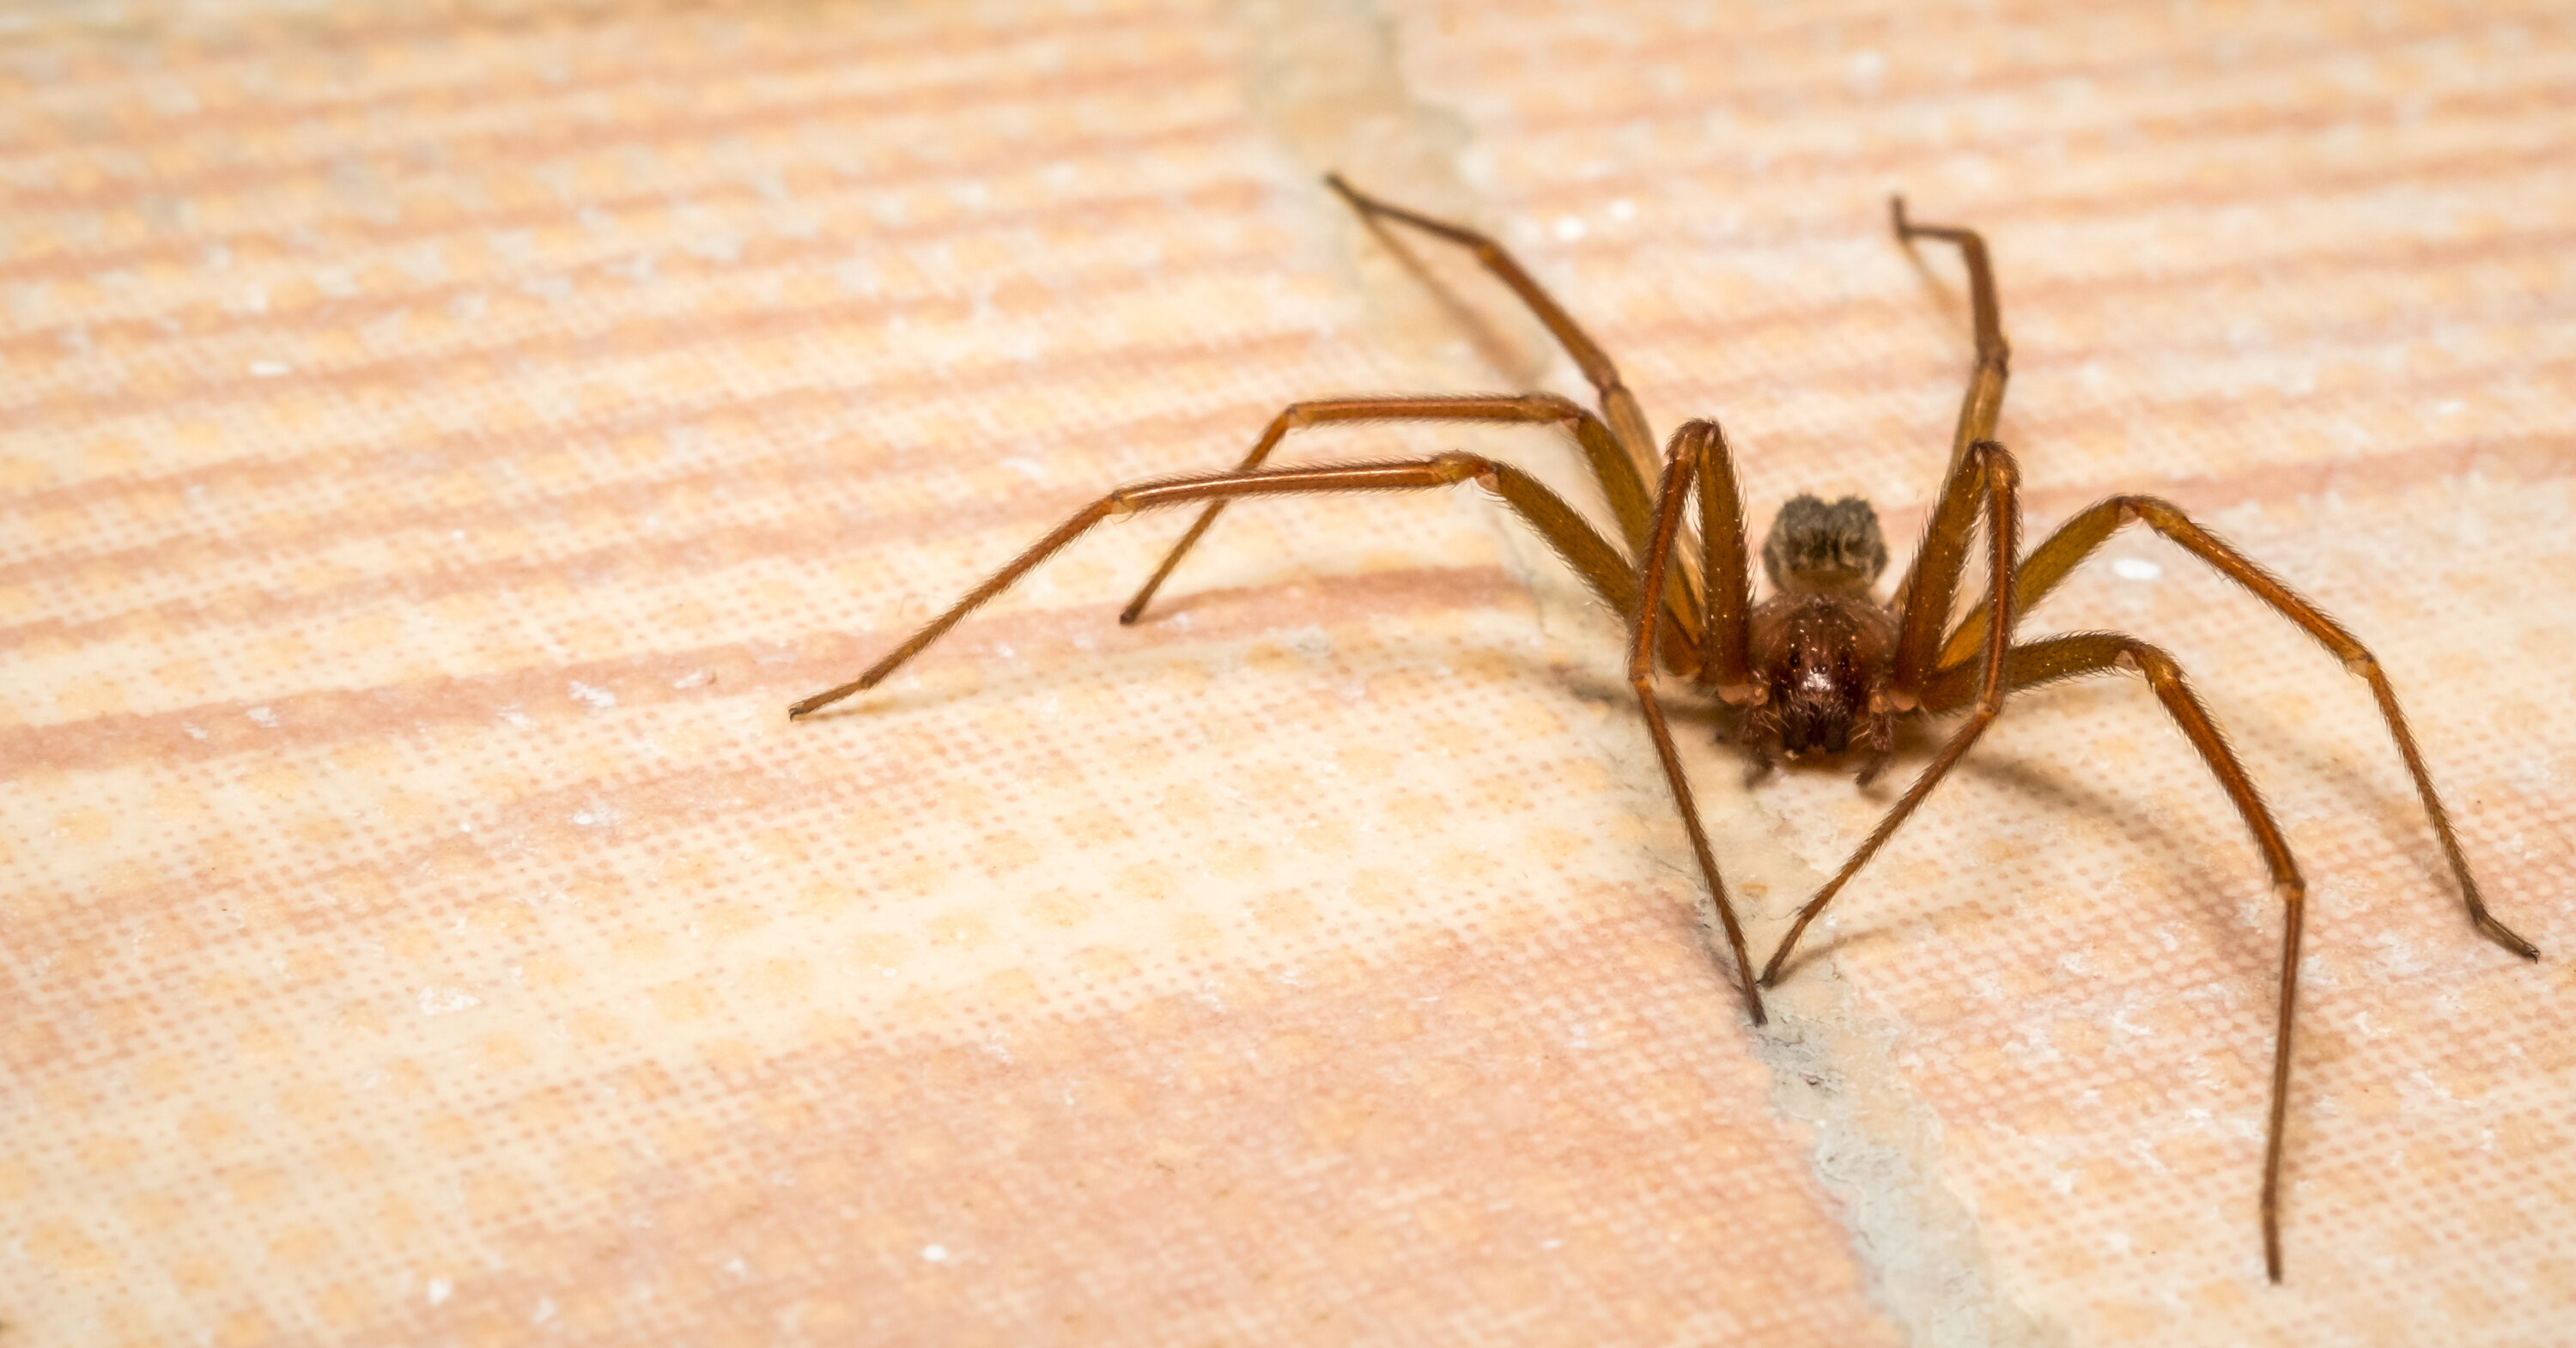 棕色瓷砖地板上的棕色隐居蜘蛛的特写镜头